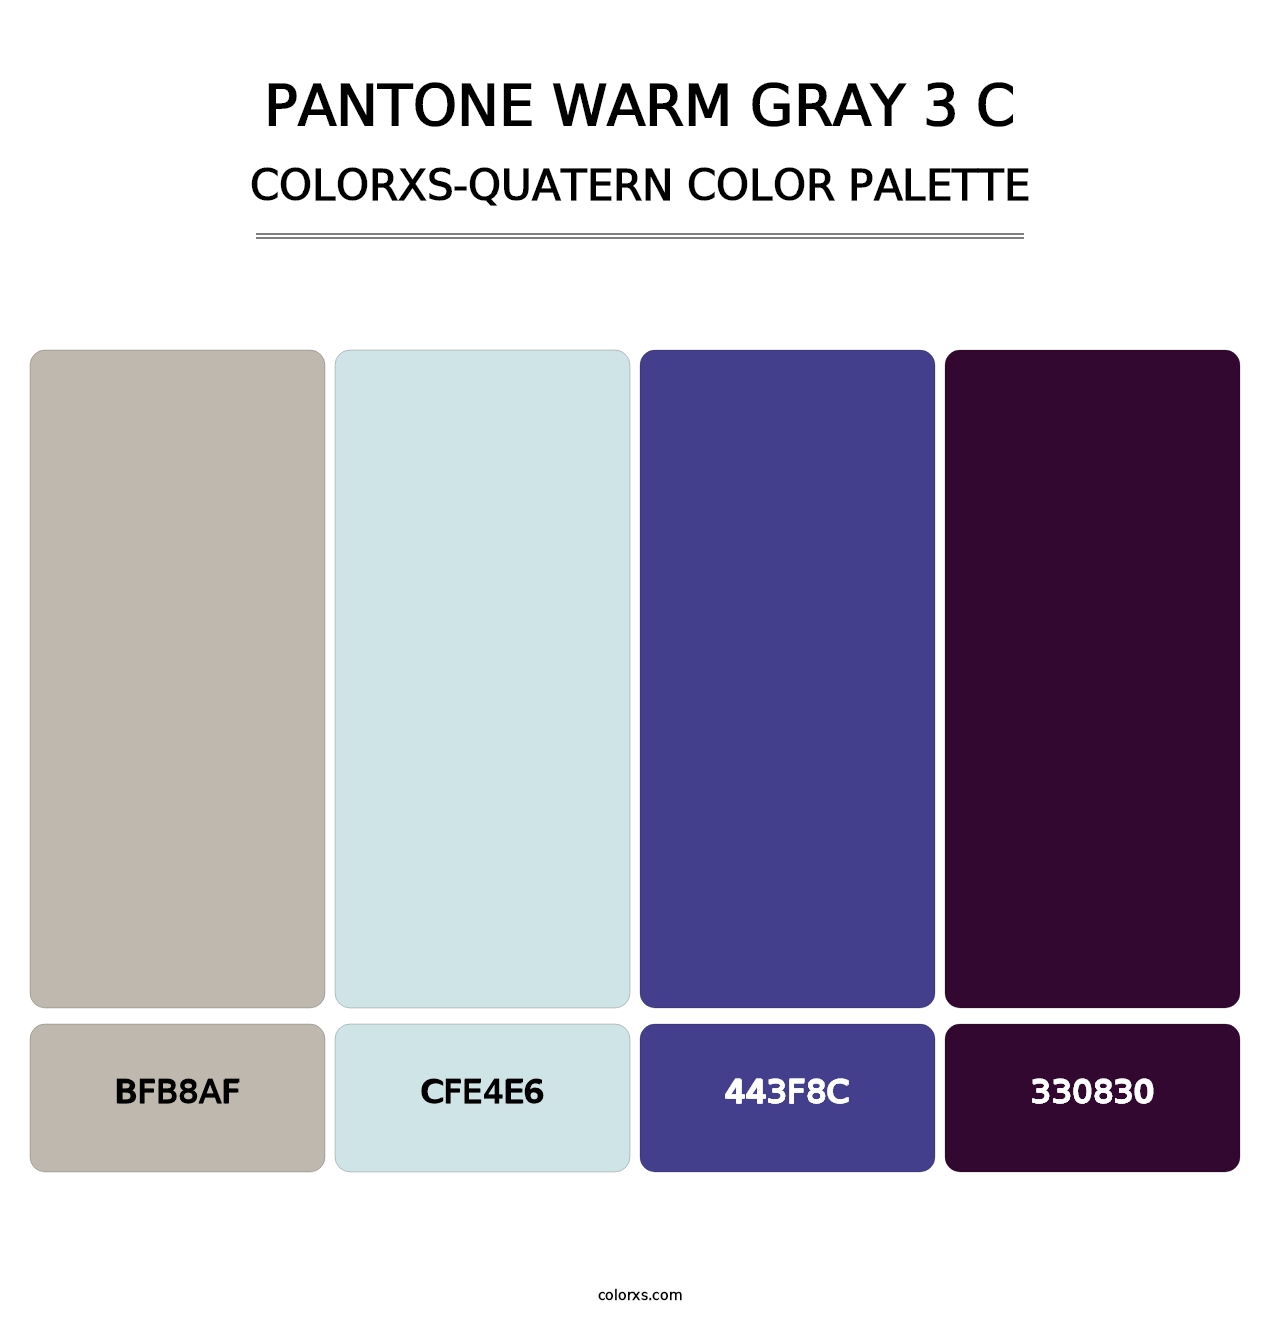 PANTONE Warm Gray 3 C - Colorxs Quatern Palette